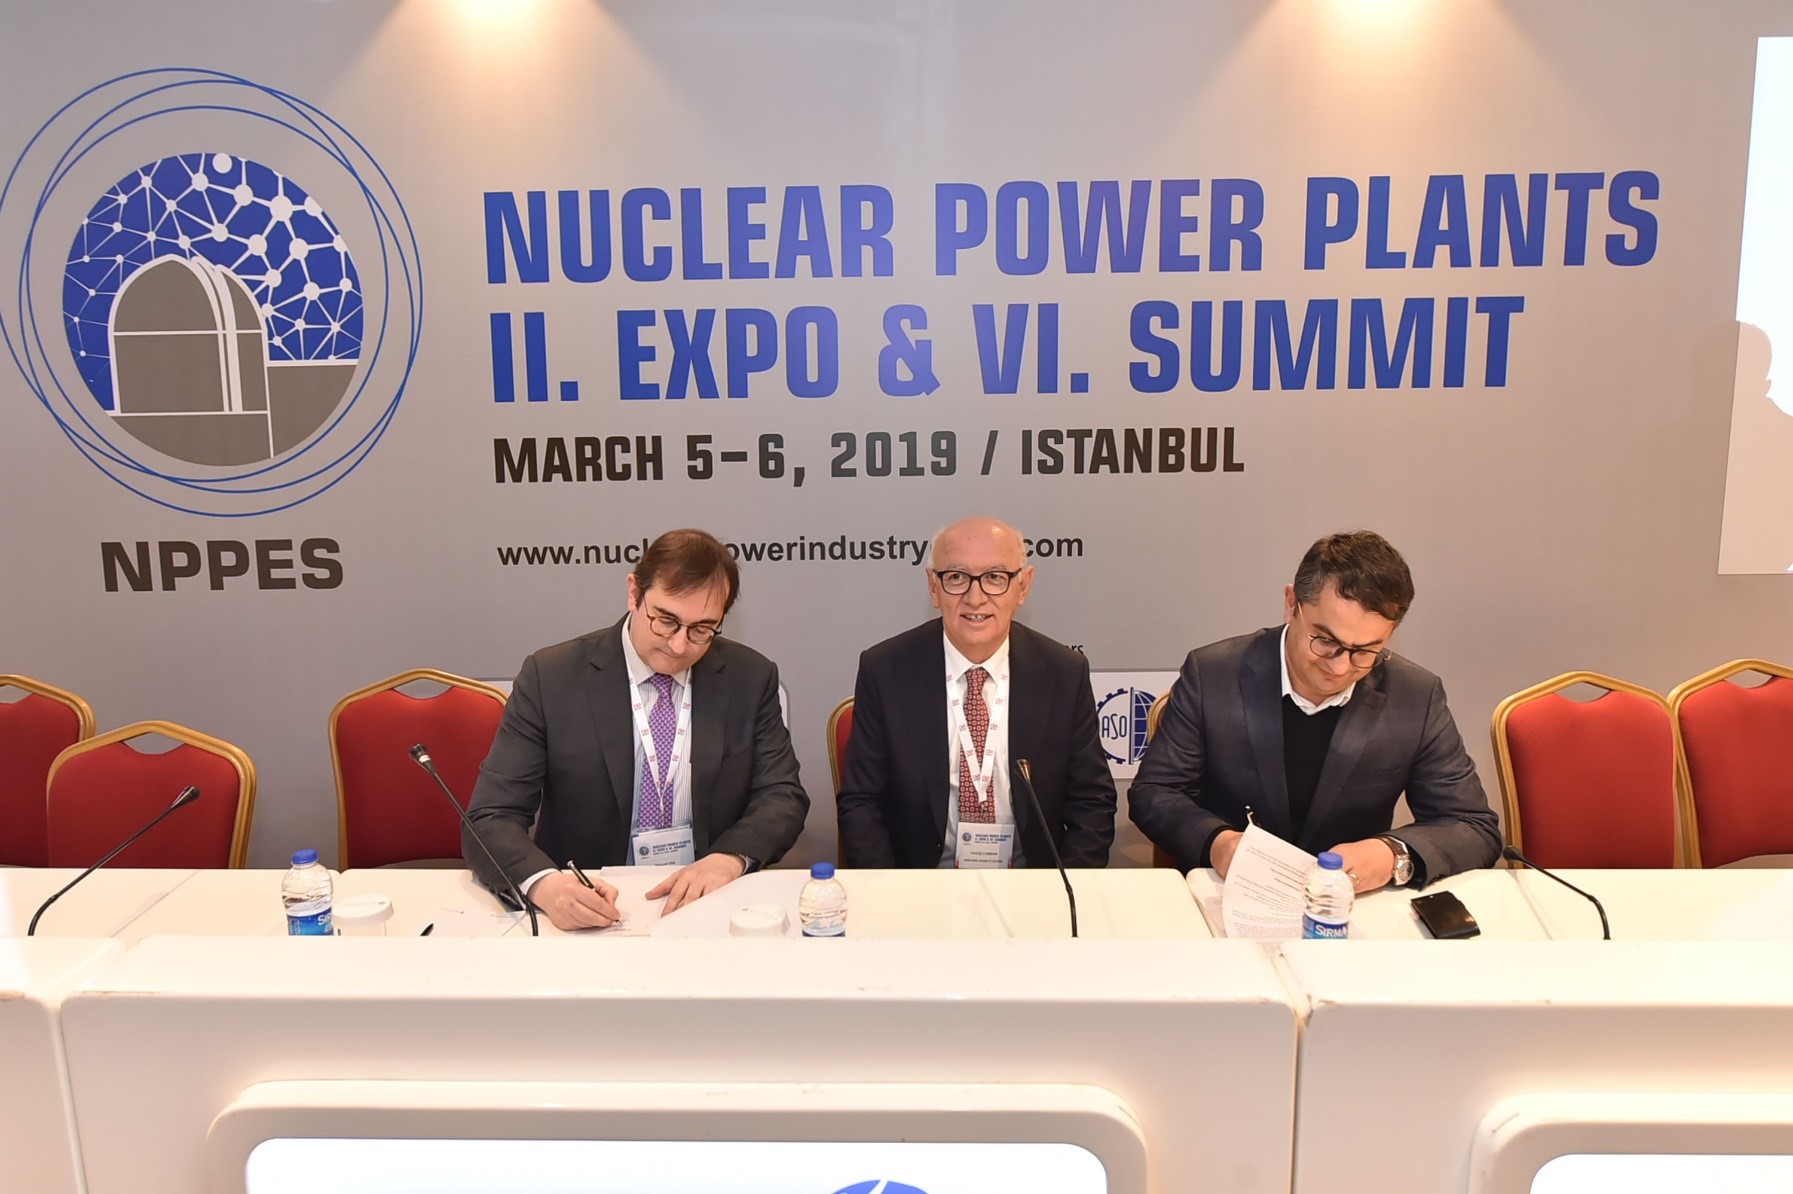 Newtesol, empresa miembro del Clúster, primera empresa española en establecer una joint venture en Turquía para involucrarse en su programa nuclear.